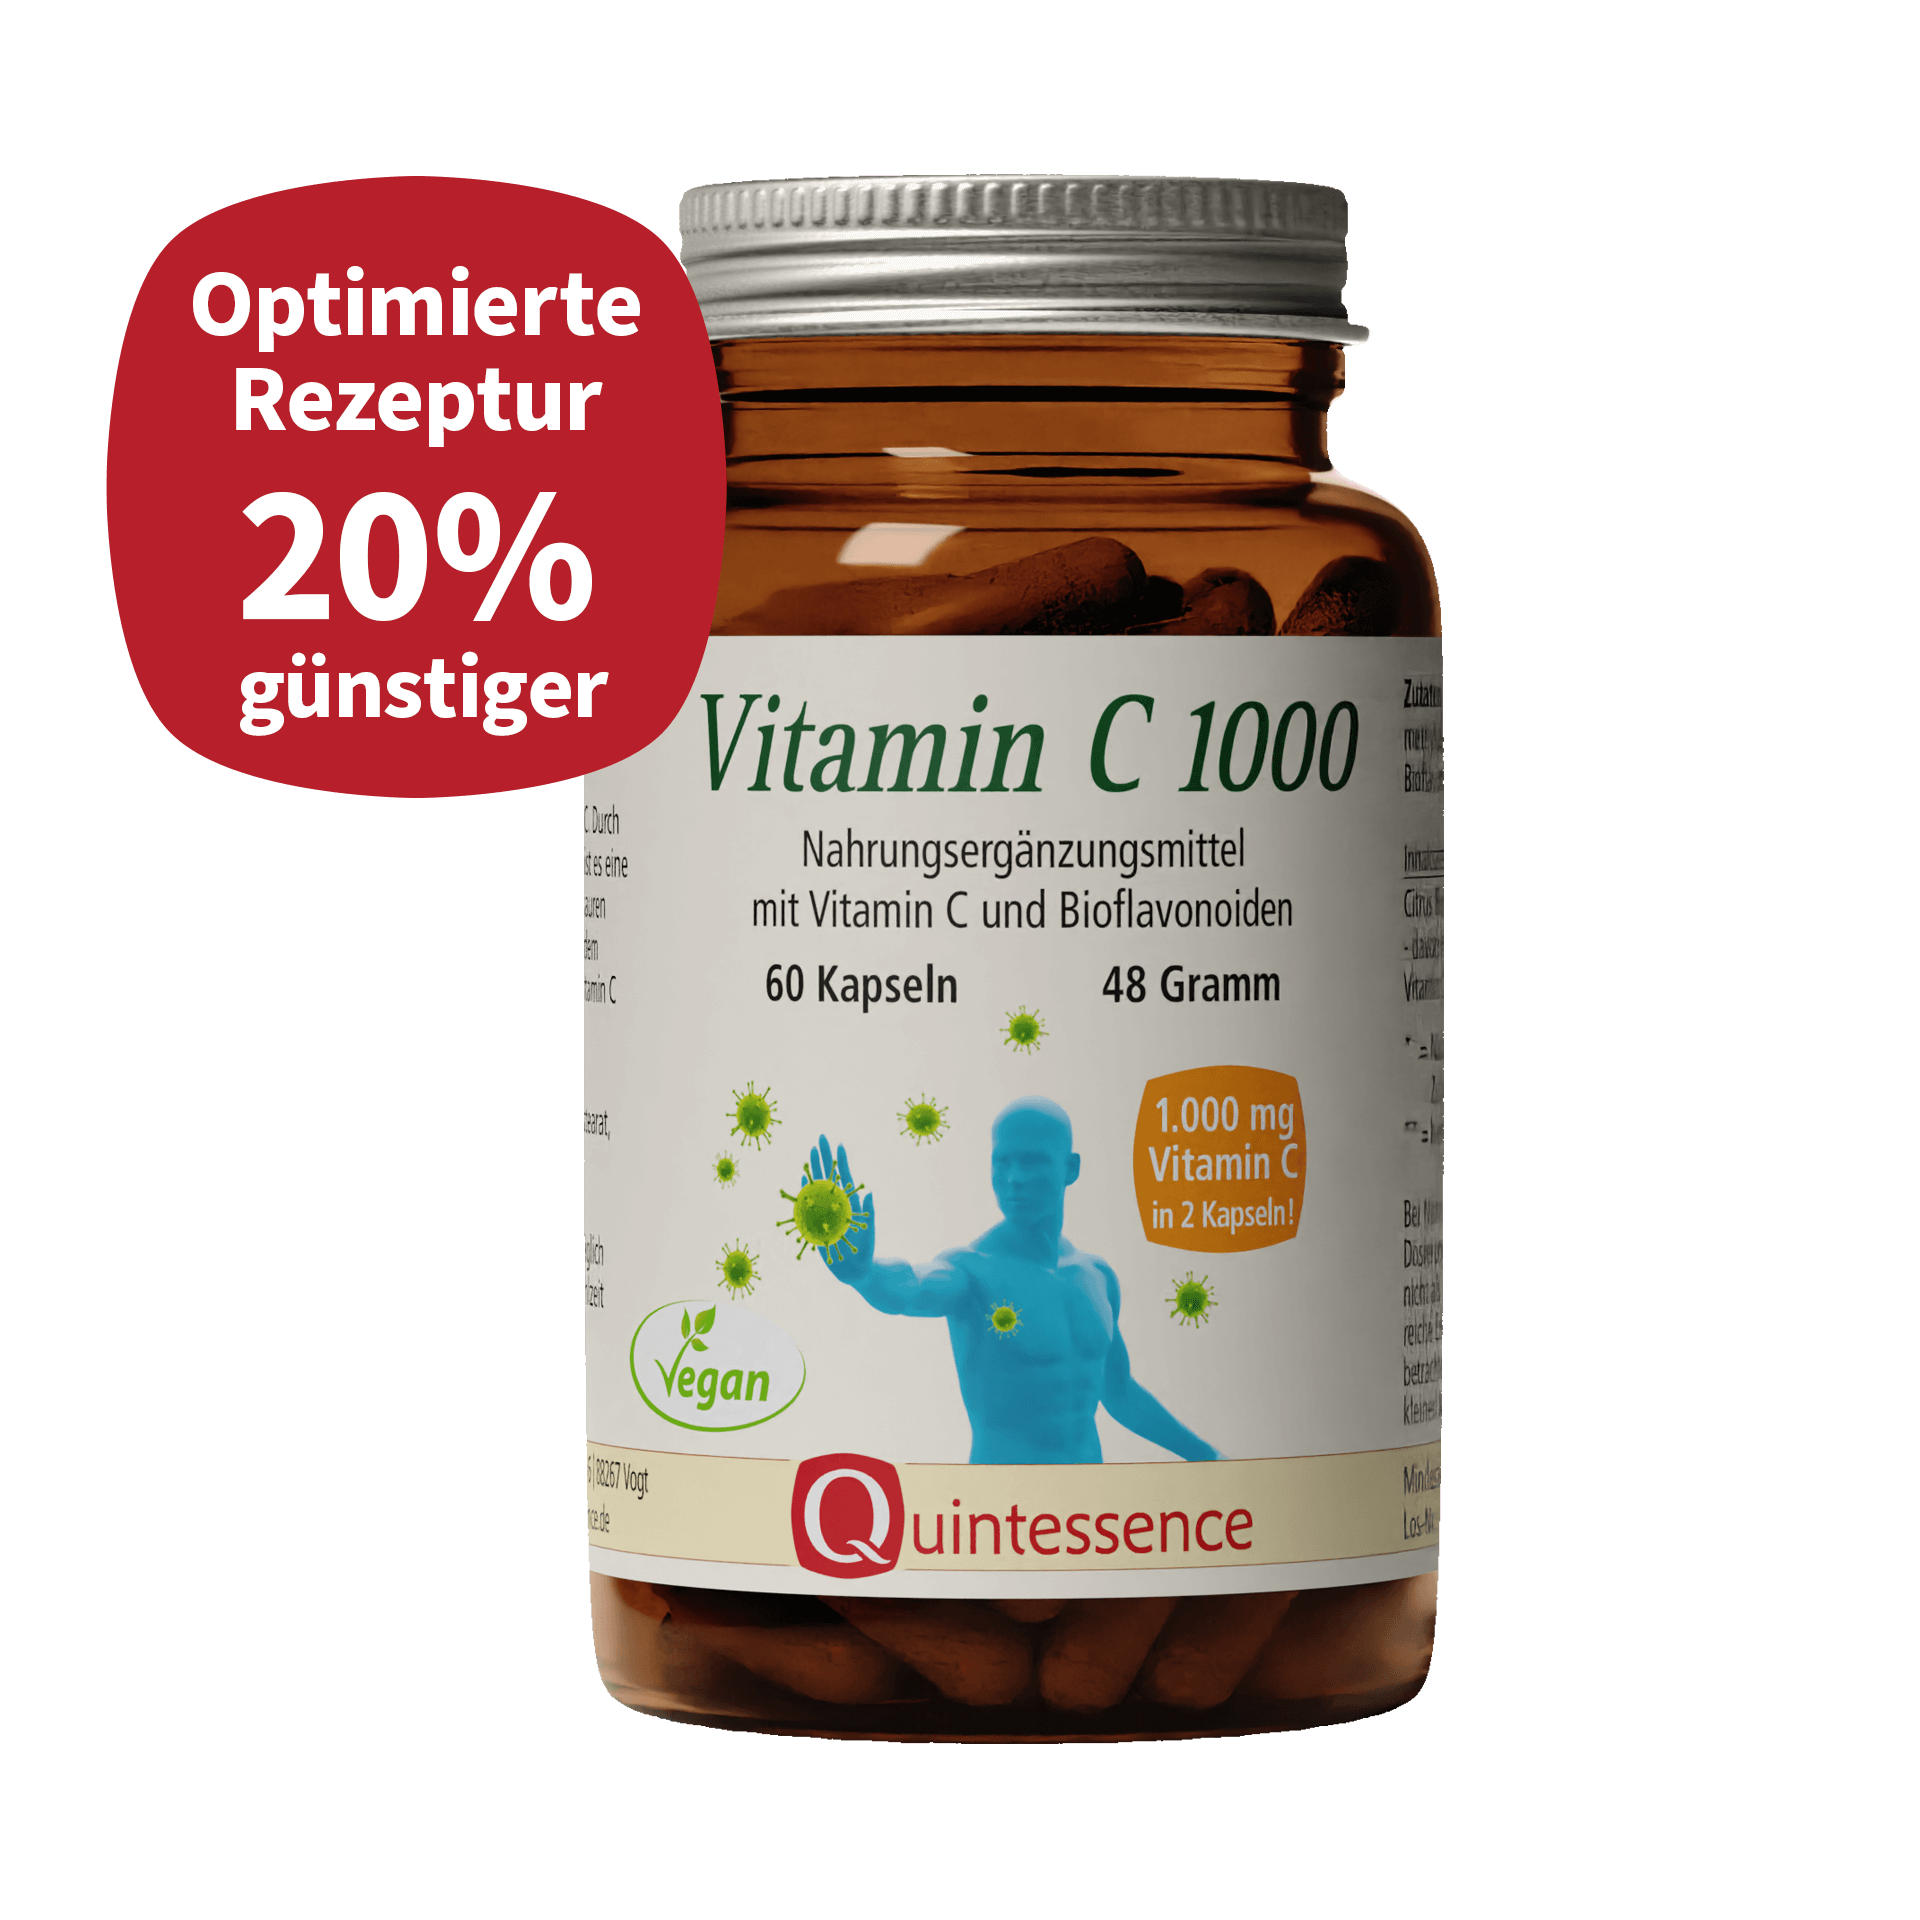 Vitamin C 1000, 60 Kapseln